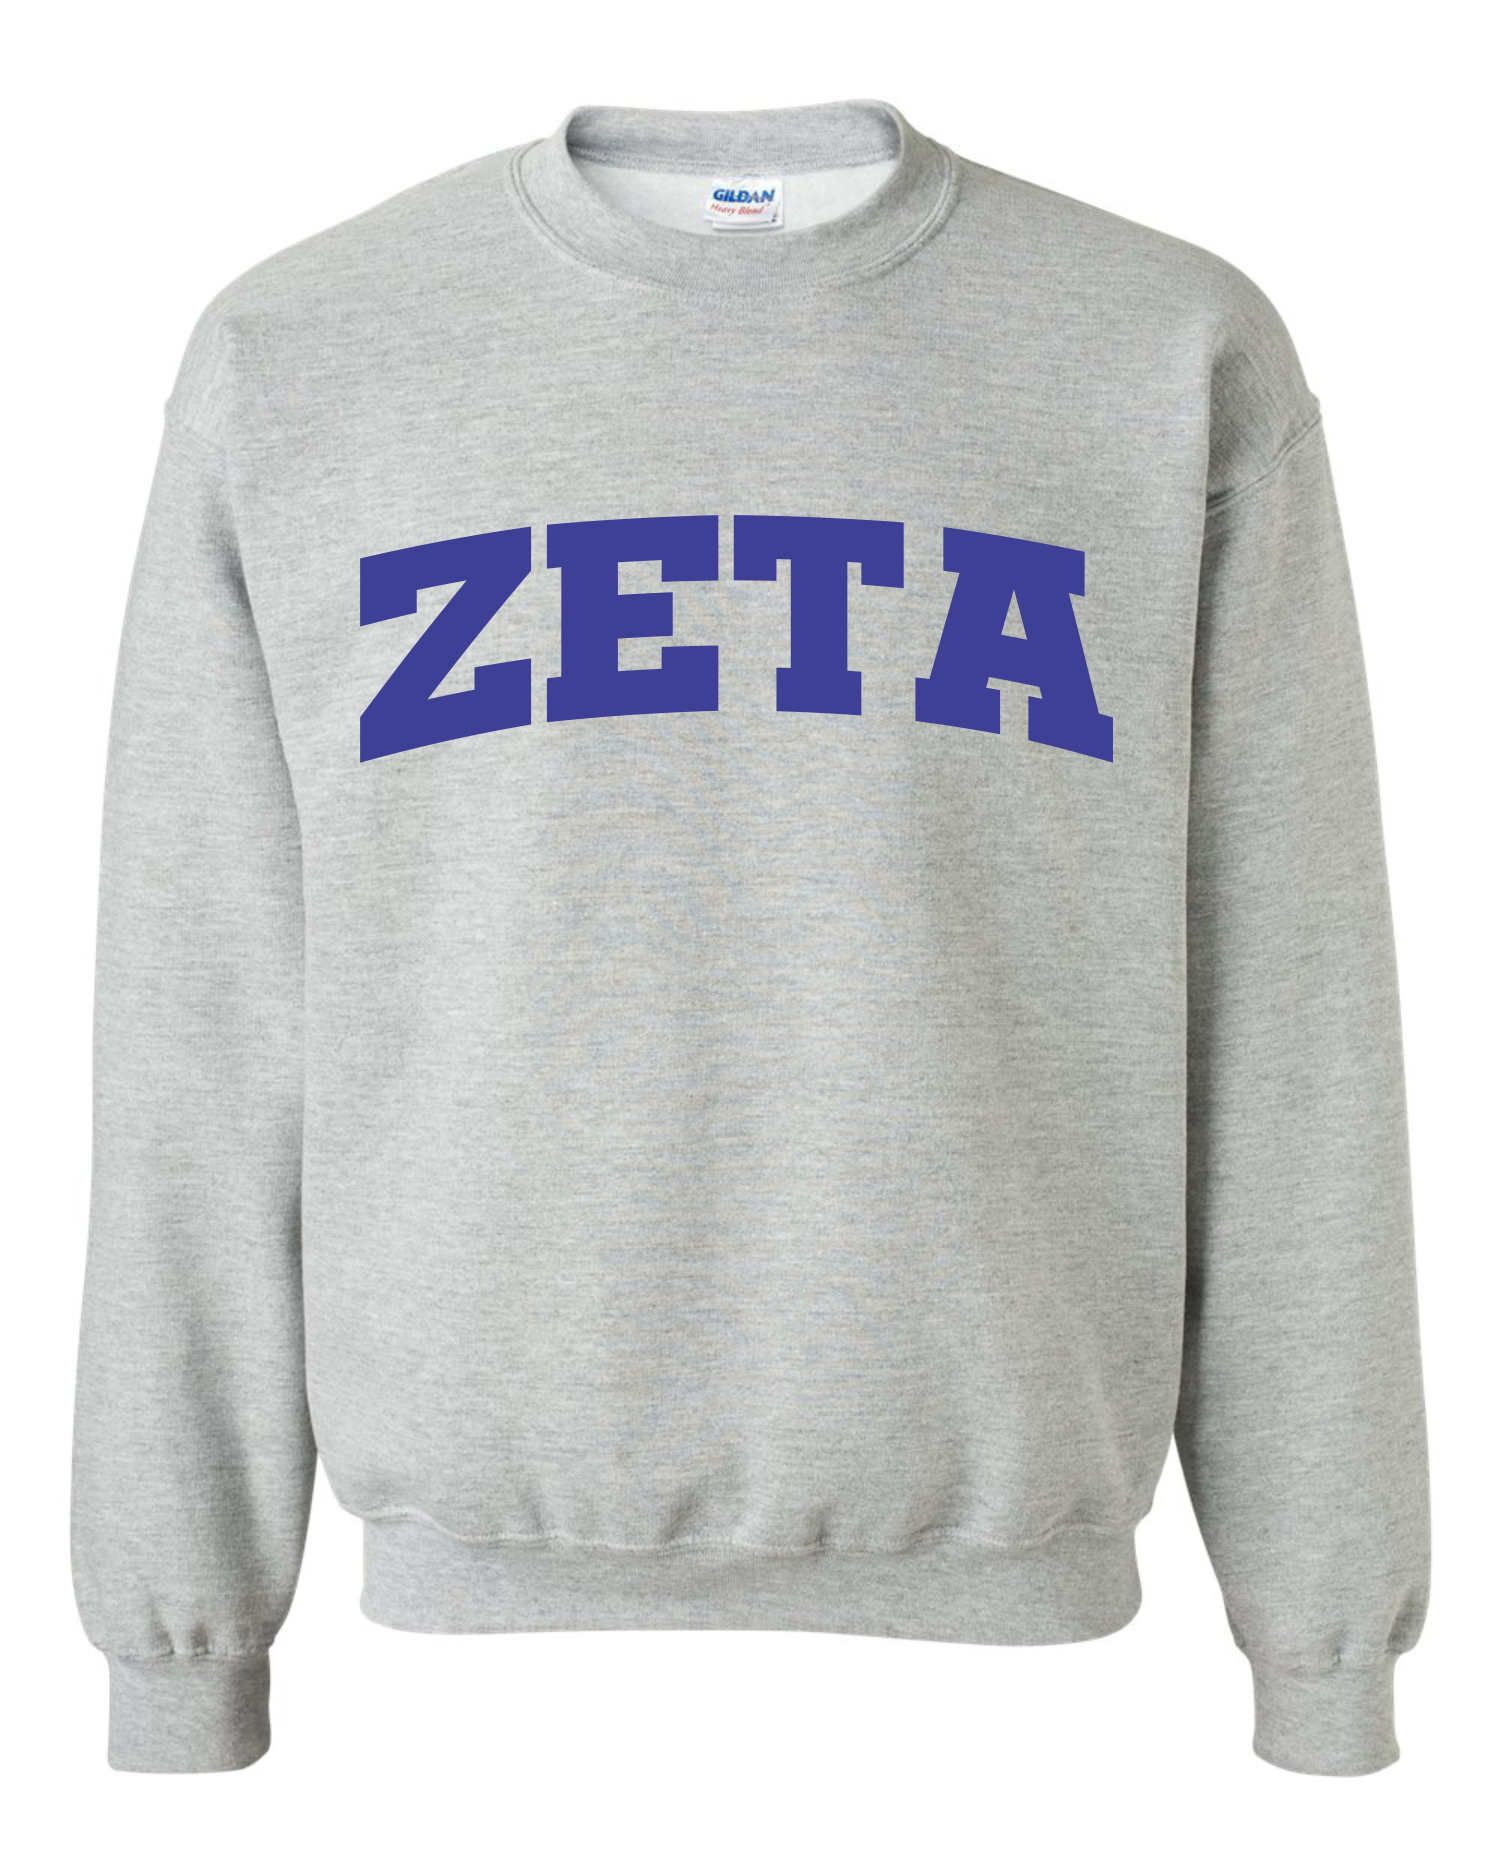 NEW Zeta Suede Lettered Sweatshirt